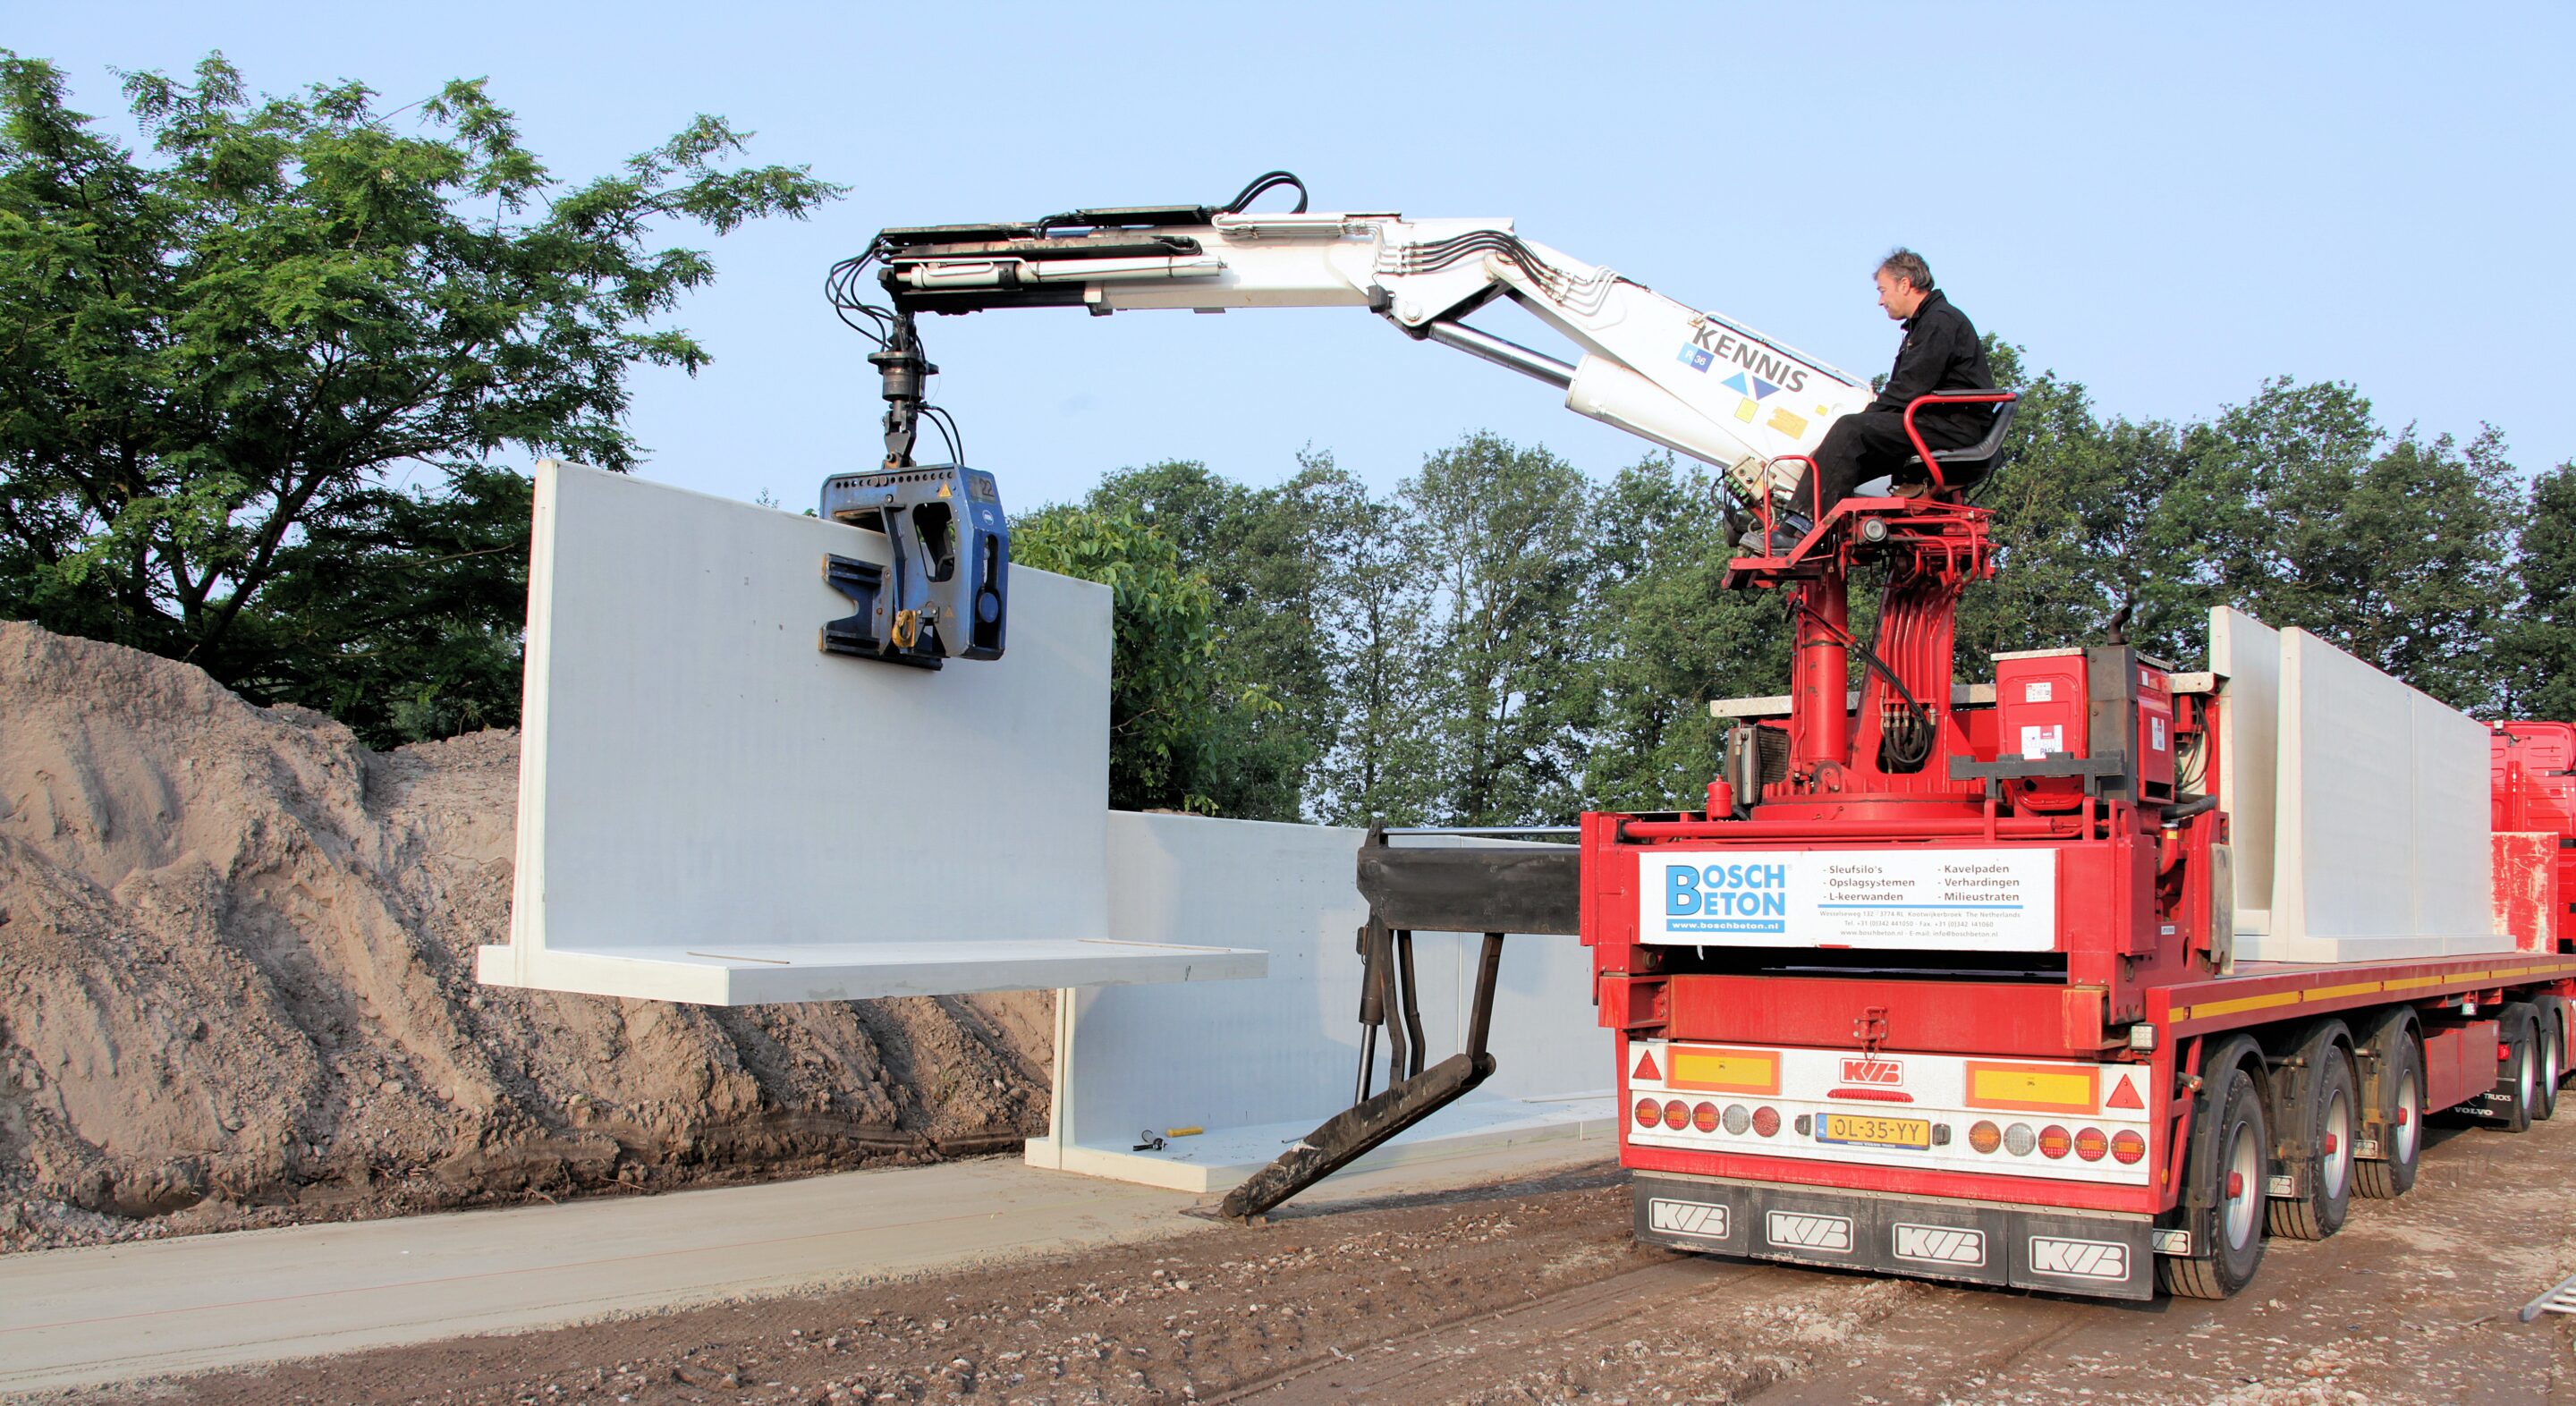 Bosch Beton - Keerwanden plaatsen vanaf vrachtwagen